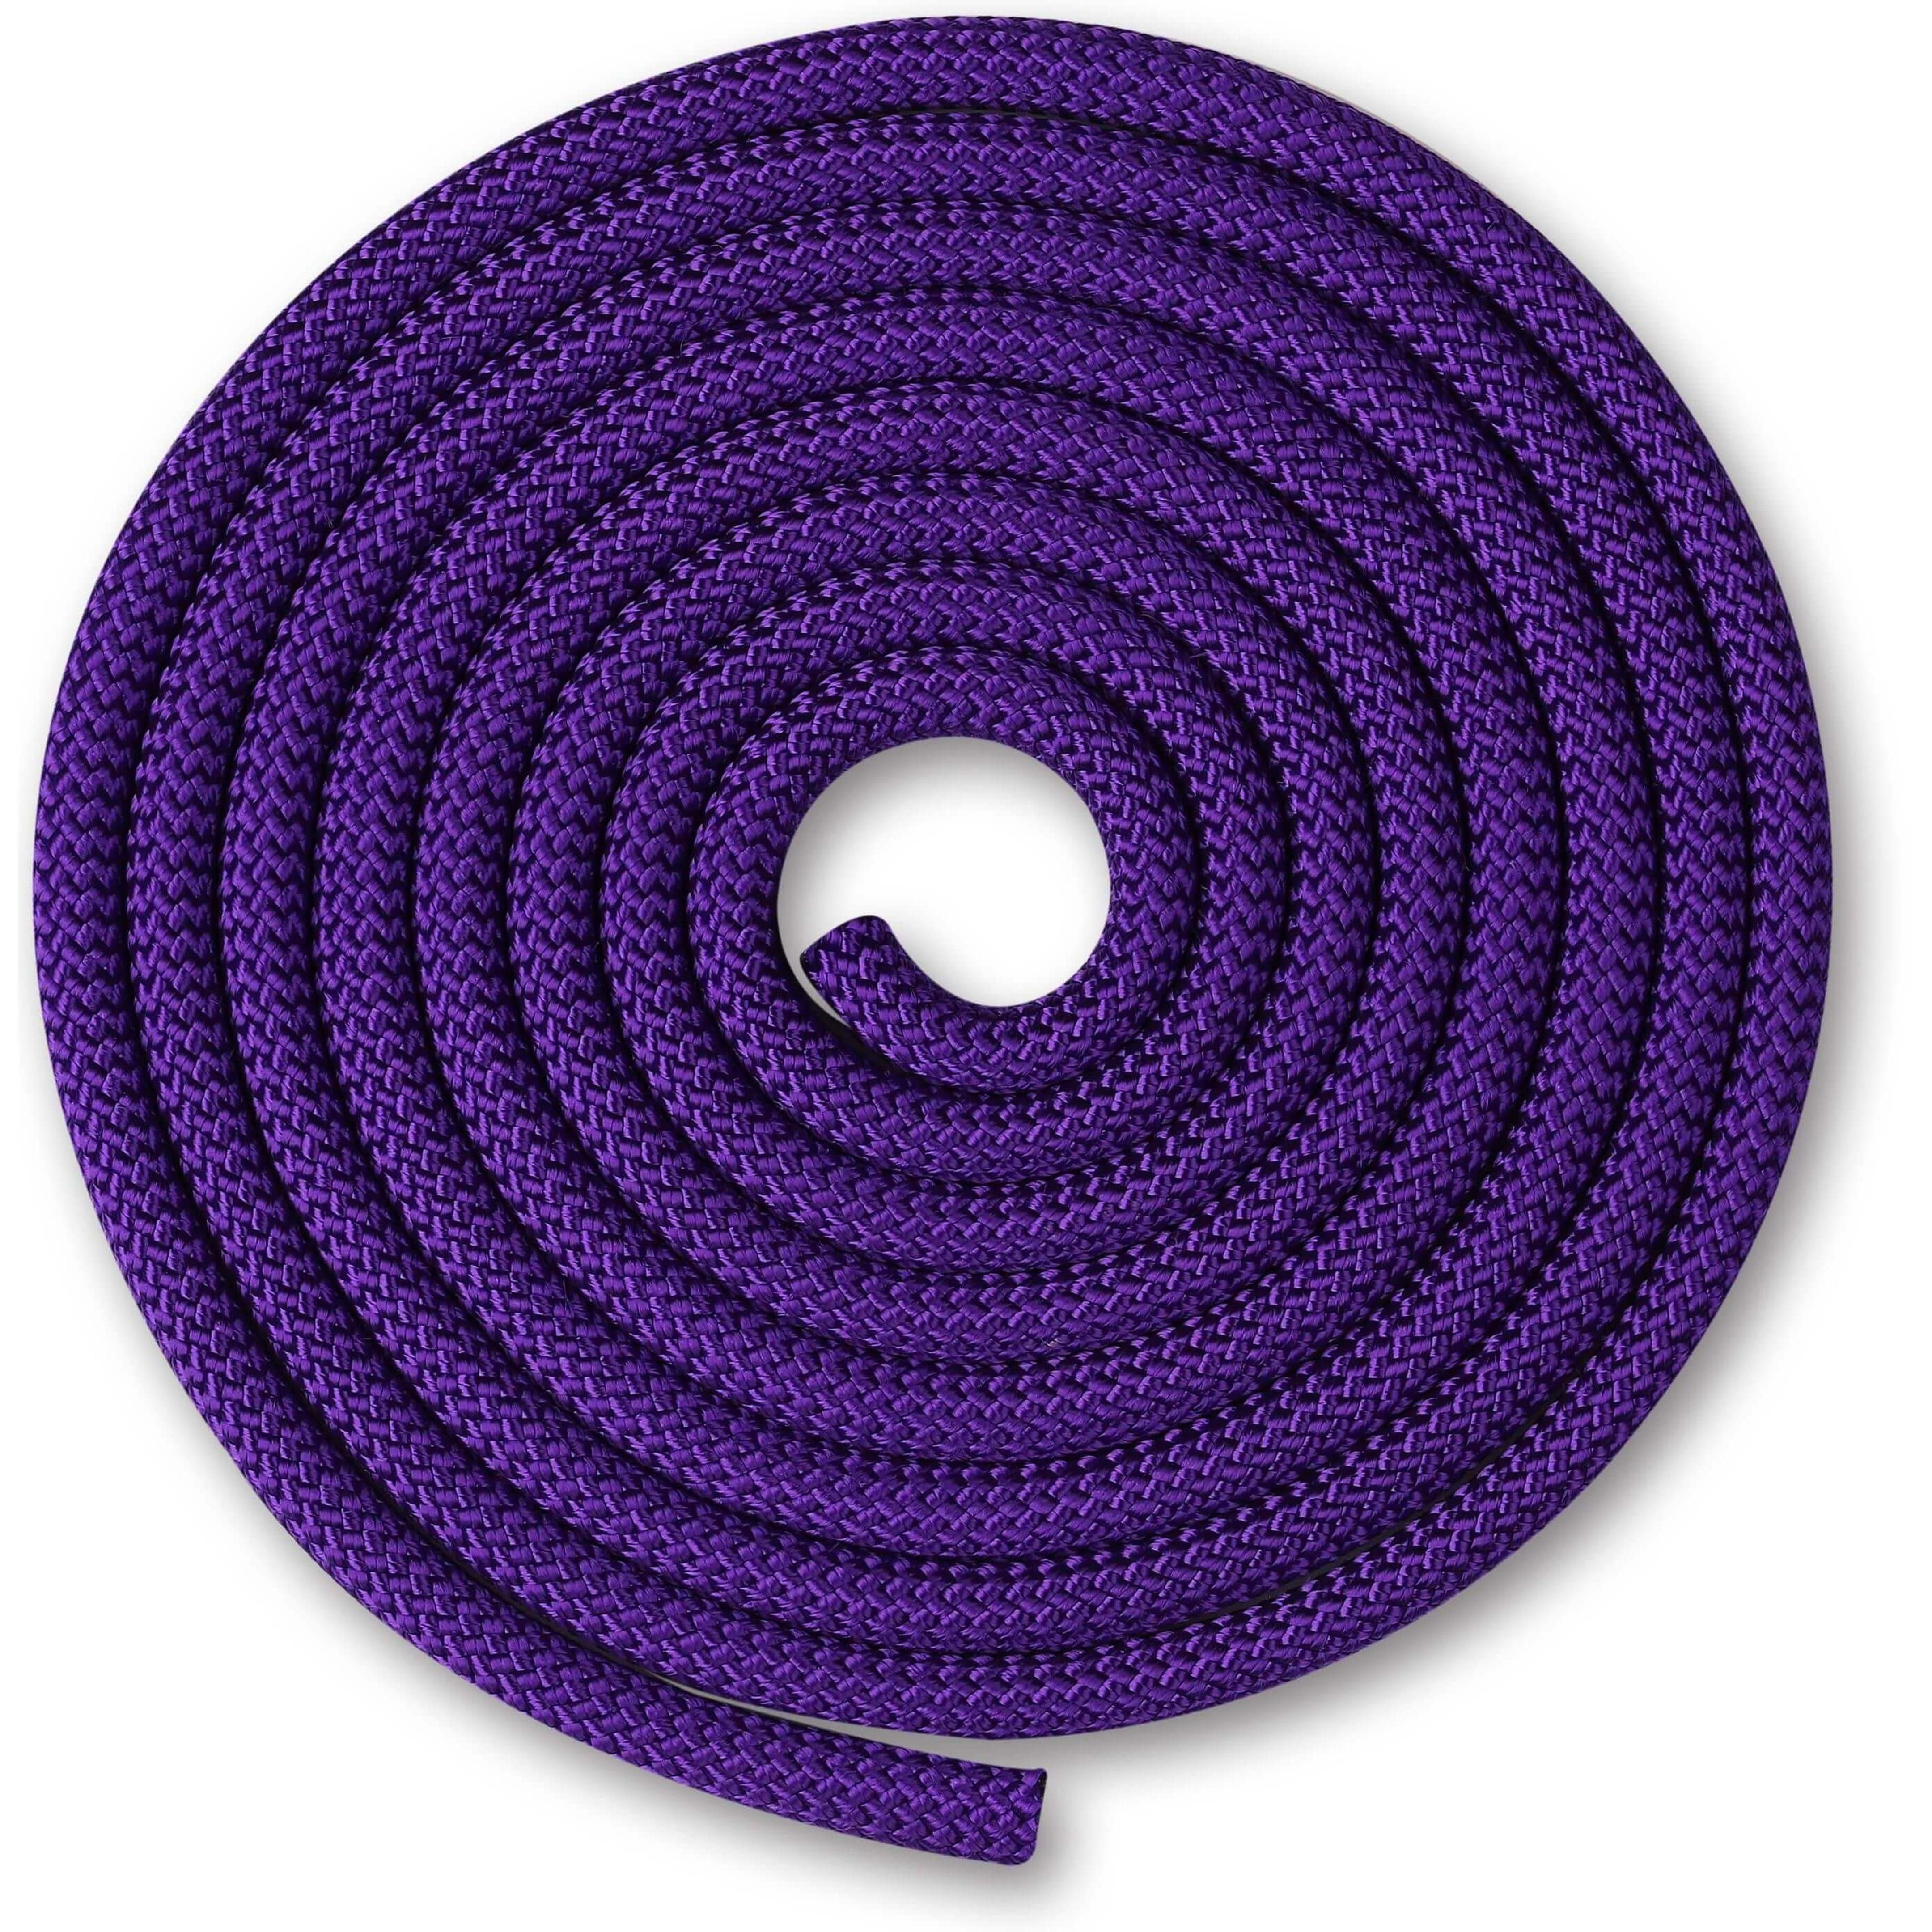 Cuerda para Gimnasia Rítmica Ponderada 150g INDIGO 2,5 m Violeta